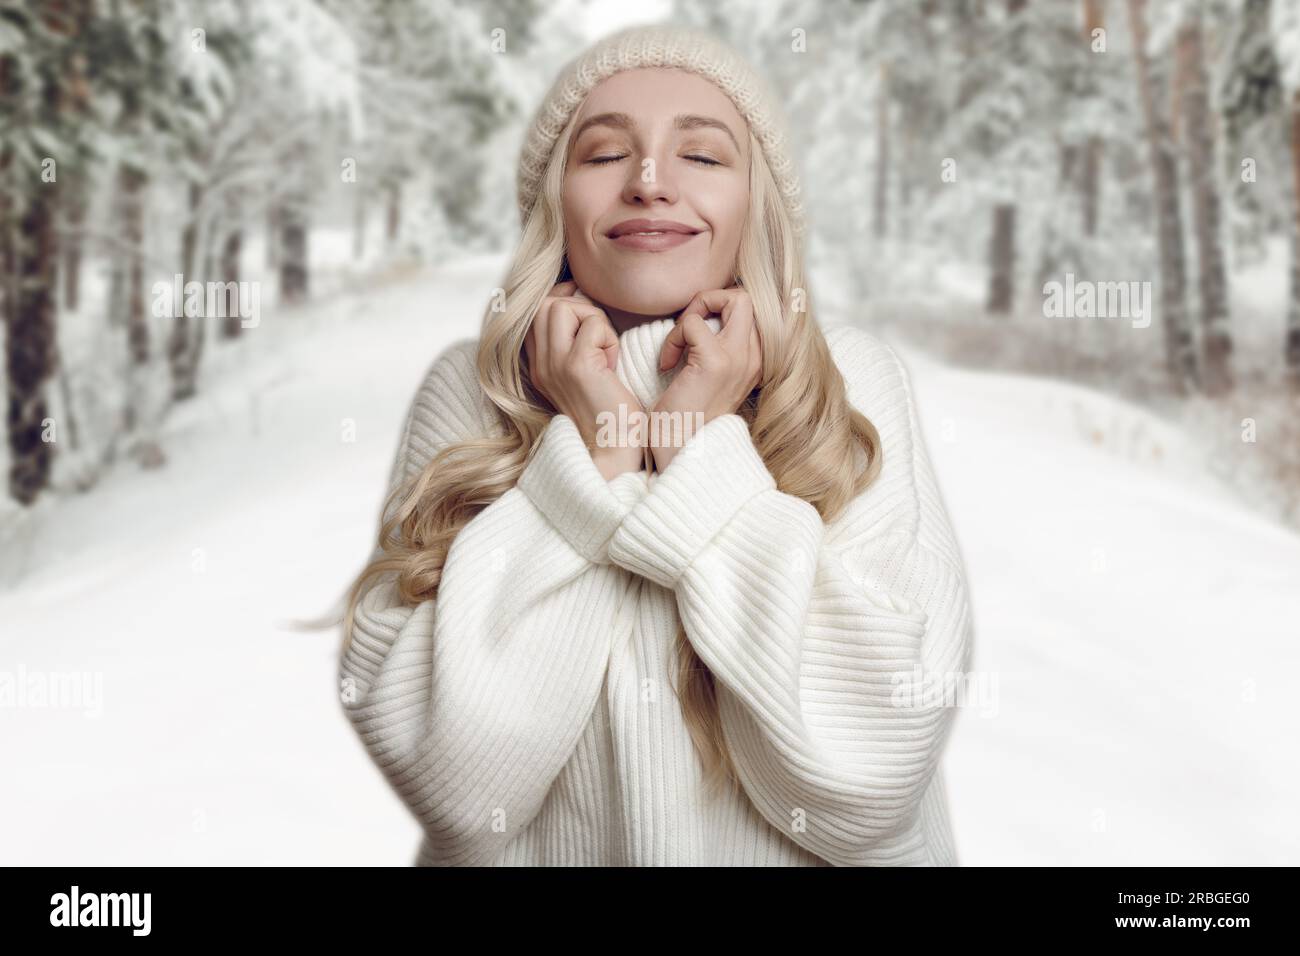 Jeune femme blonde appréciant son pull tricoté blanc, debout contre fond de paysage forestier d'hiver, avec ses mains à son cou et souriant Banque D'Images